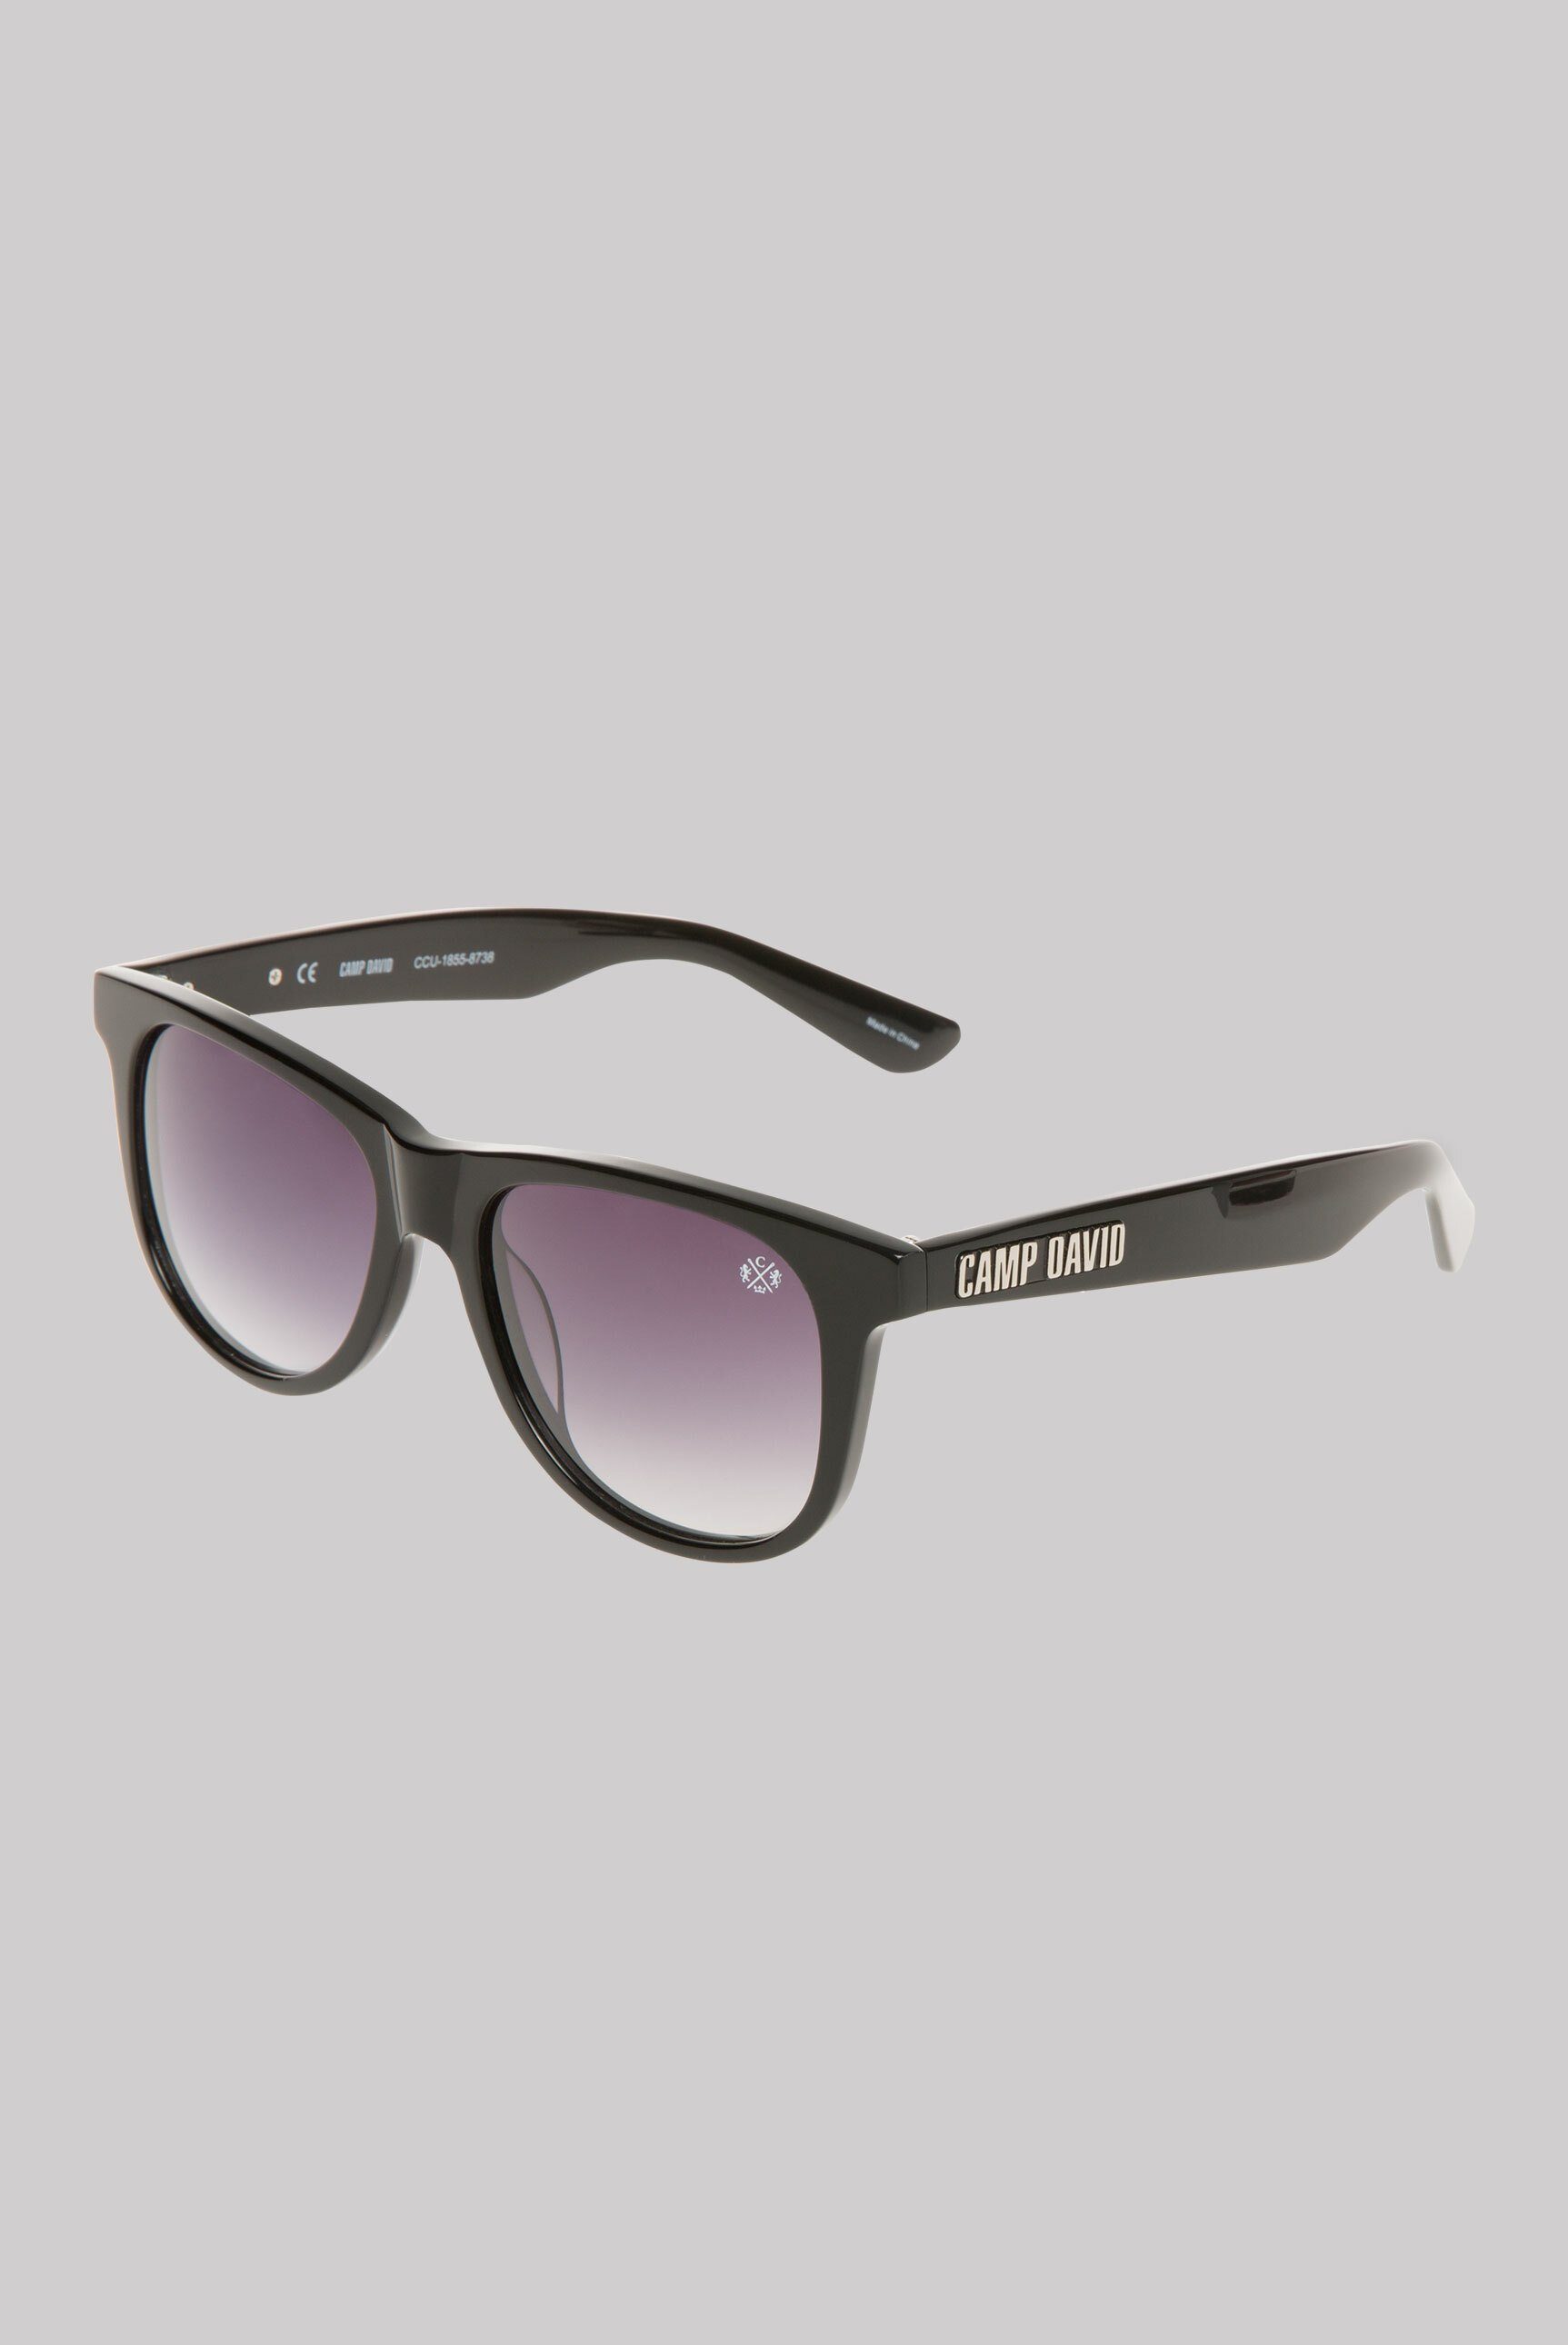 CAMP DAVID Sonnenbrille (ca. 17 x 15 x 15 cm) Print schwarz | Sonnenbrillen